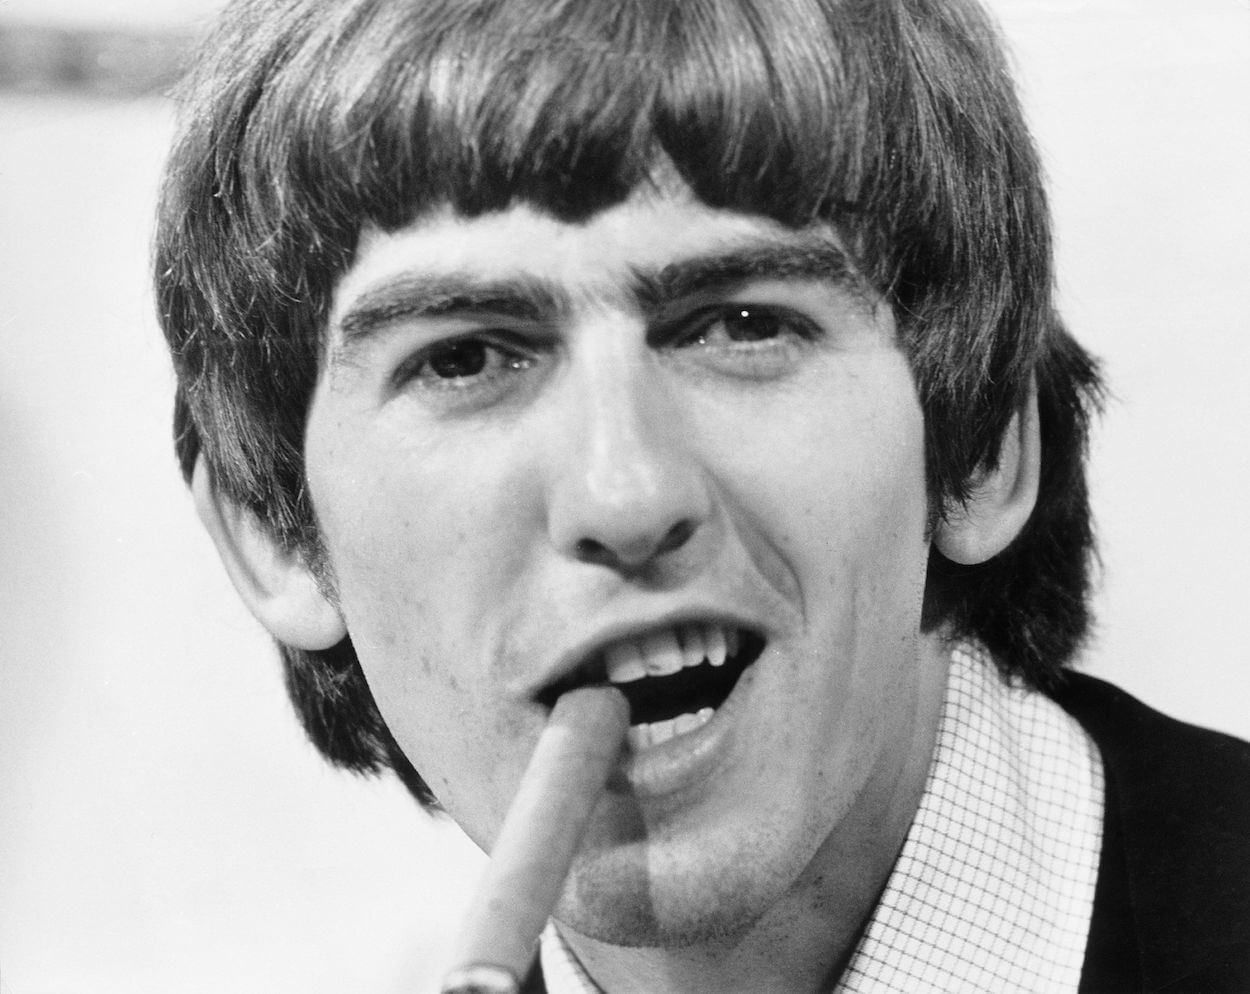 Una mirada al momento de diva de George Harrison cuando se negó a limpiar su propio vómito